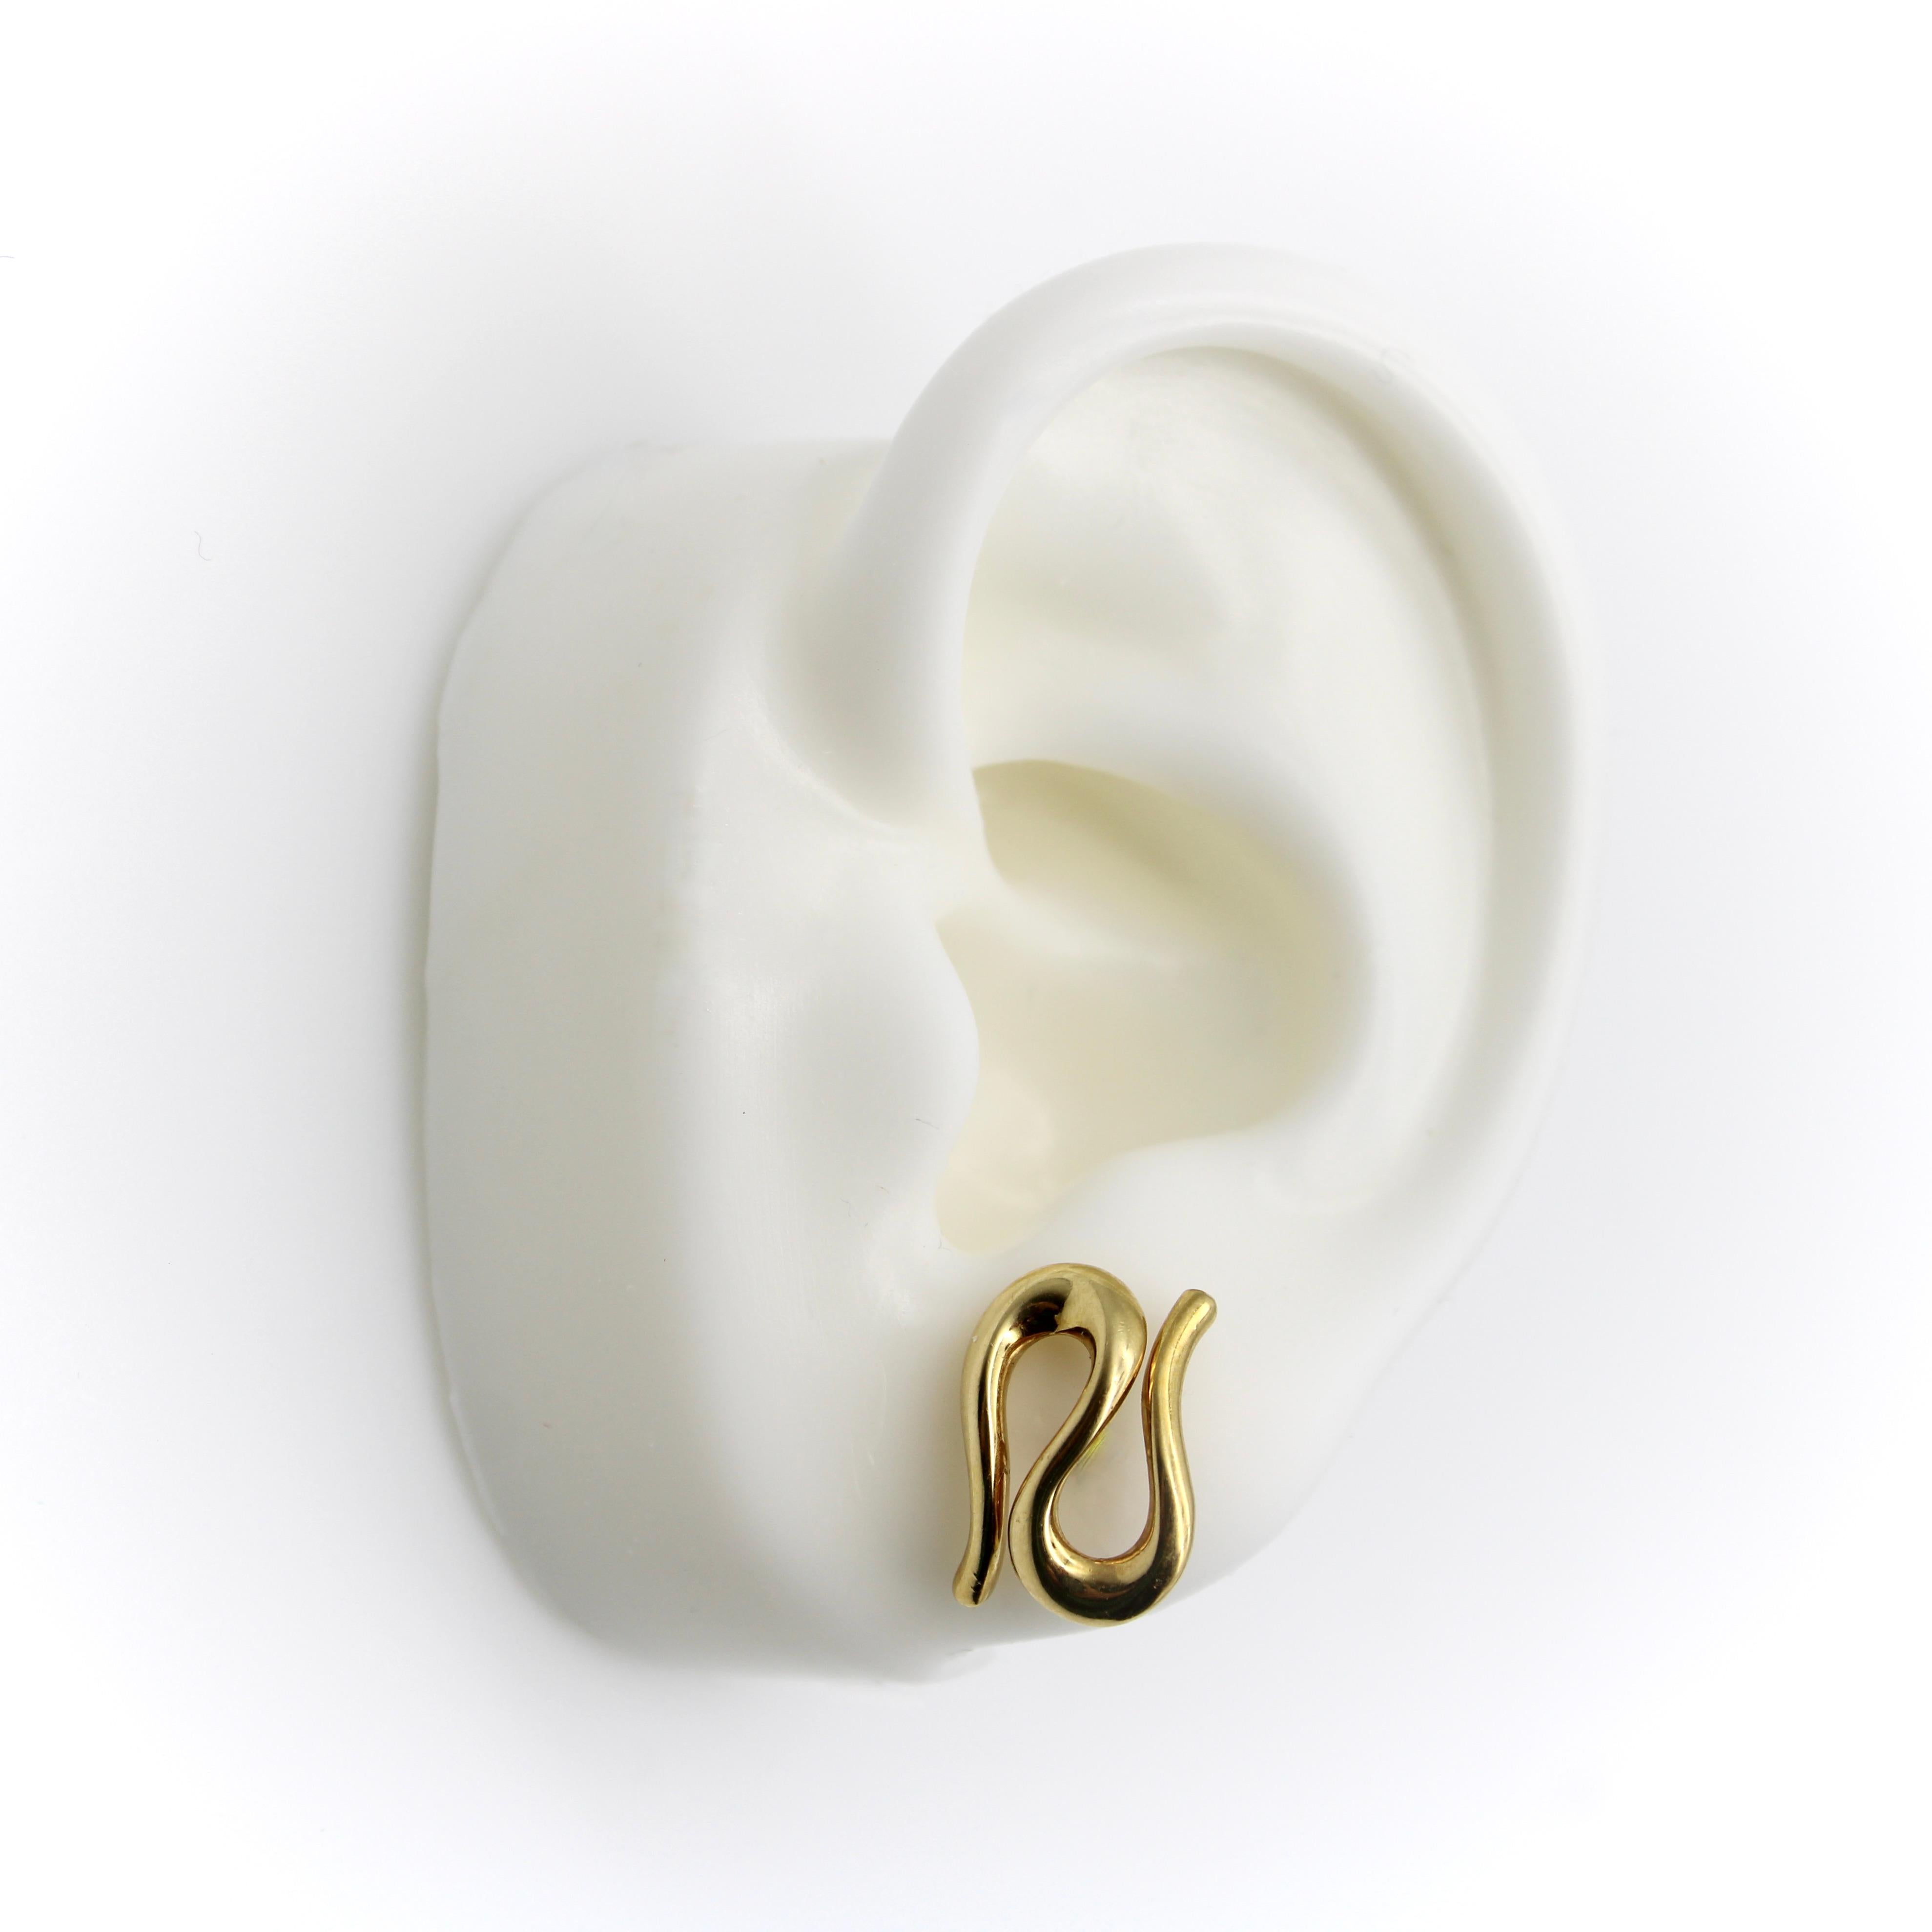 Modernist 18k Gold Elsa Peretti Snake Stud Earrings by Tiffany & Co.